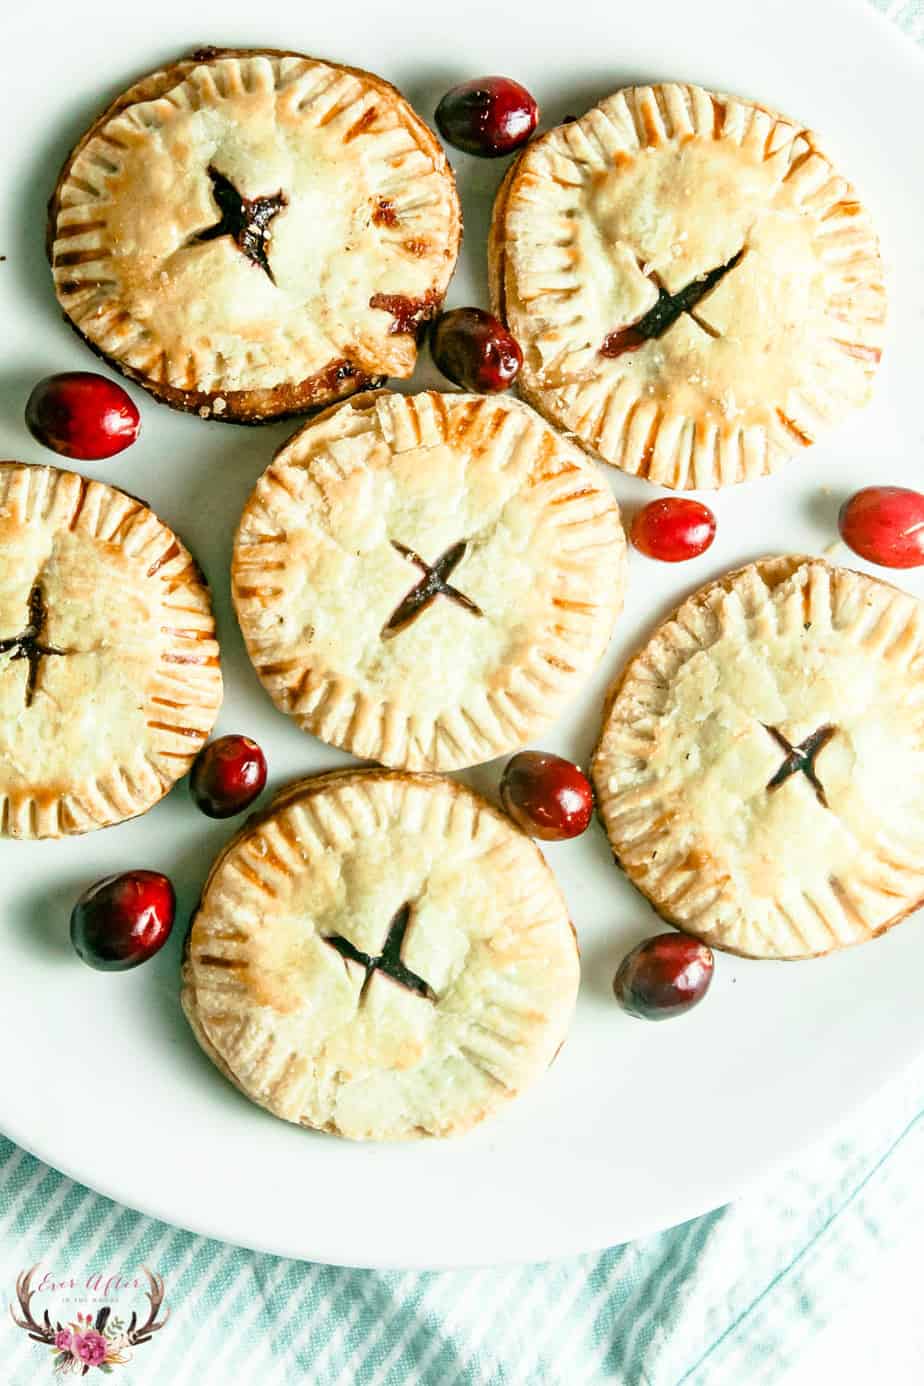 homemade cranberry pop tart | cranberry hand pie | breakfast treat